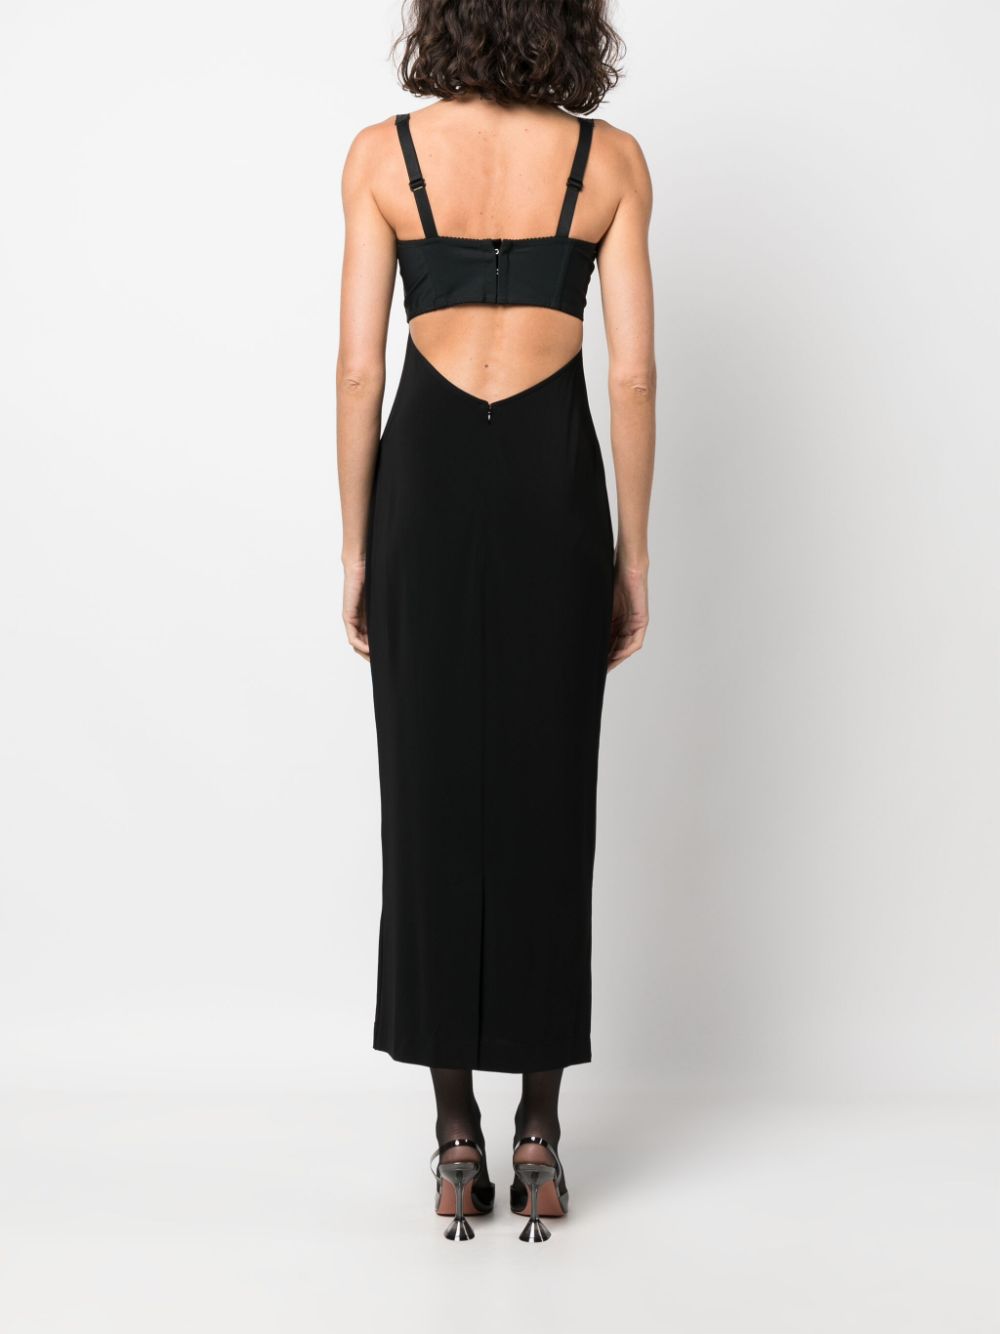 Dolce & Gabbana x Kim Kardashian Bustier Midi Dress - Farfetch